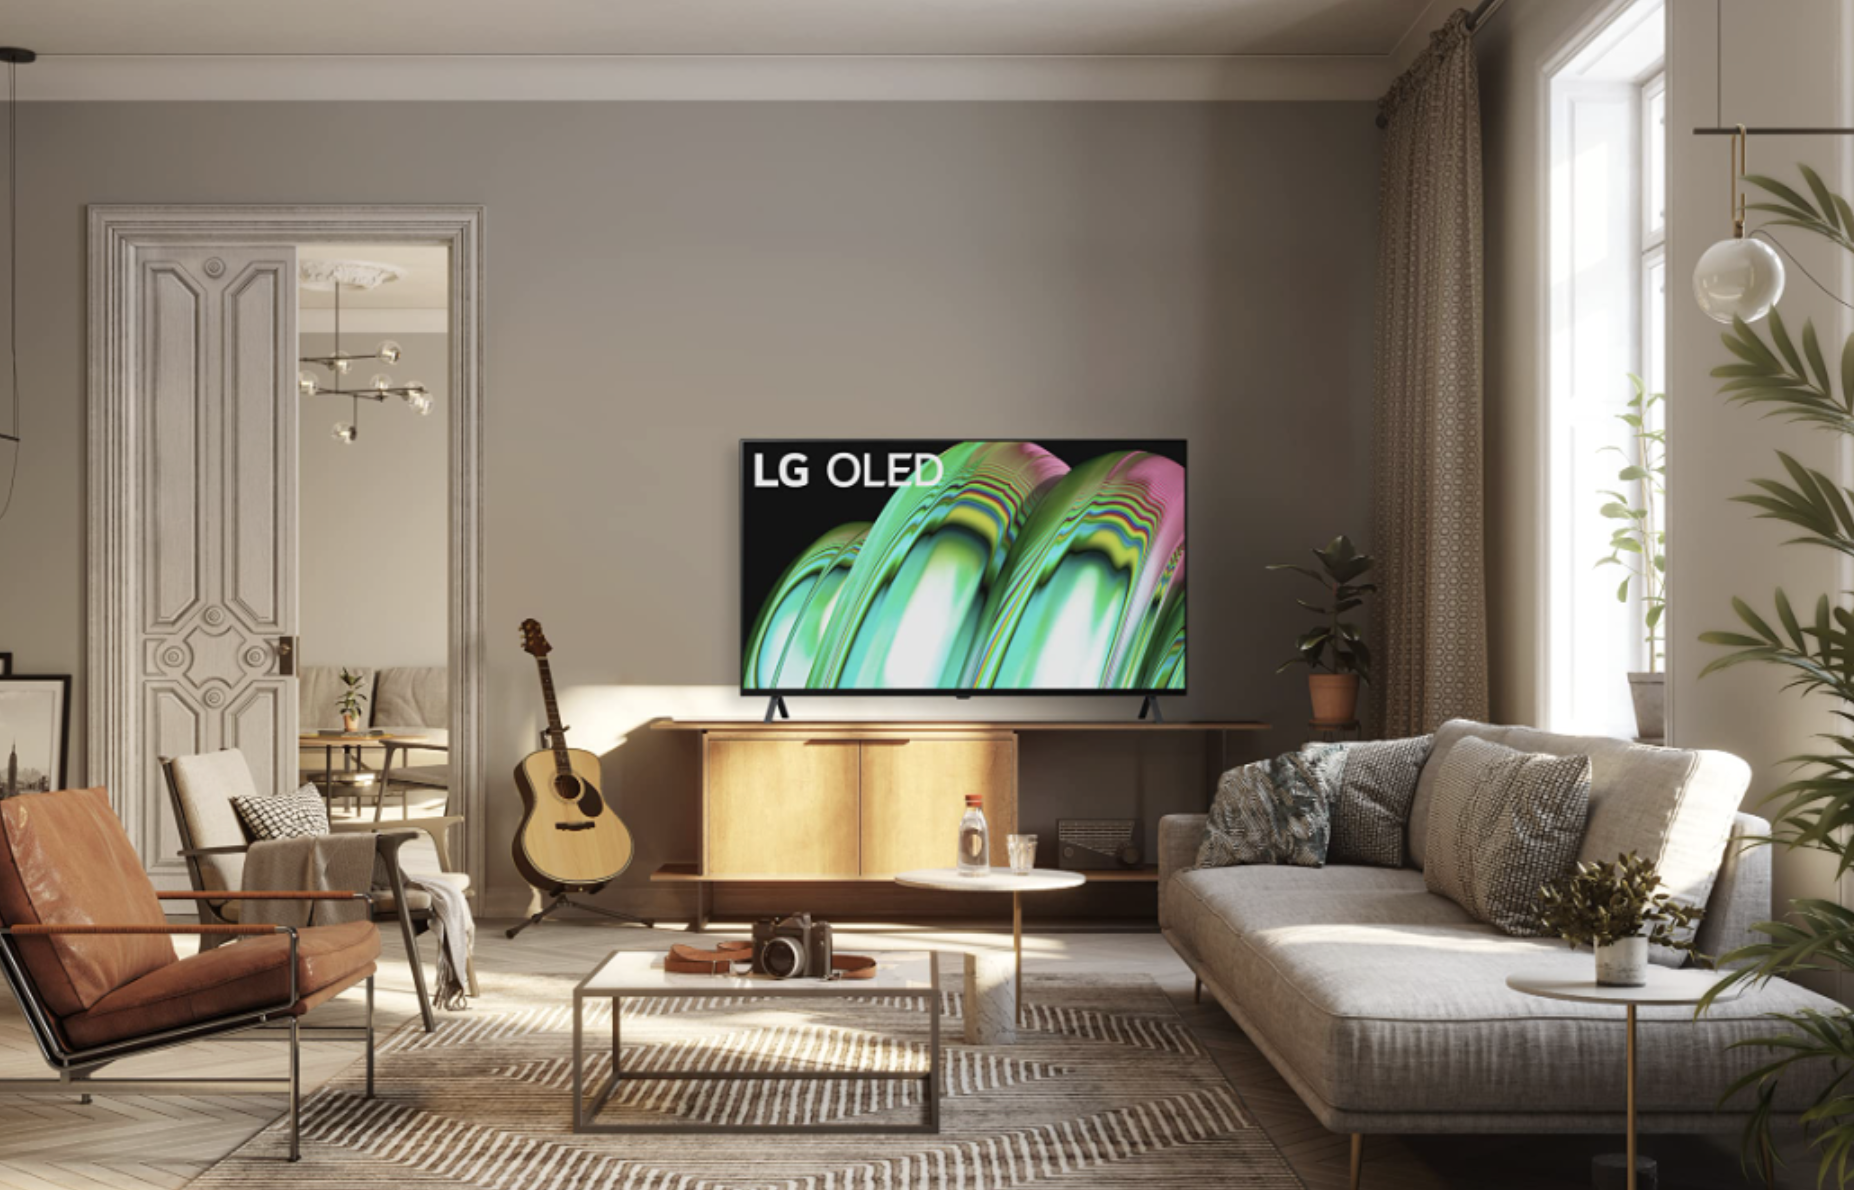 LG B2 OLED 4K TV Lifestyle ImageResized